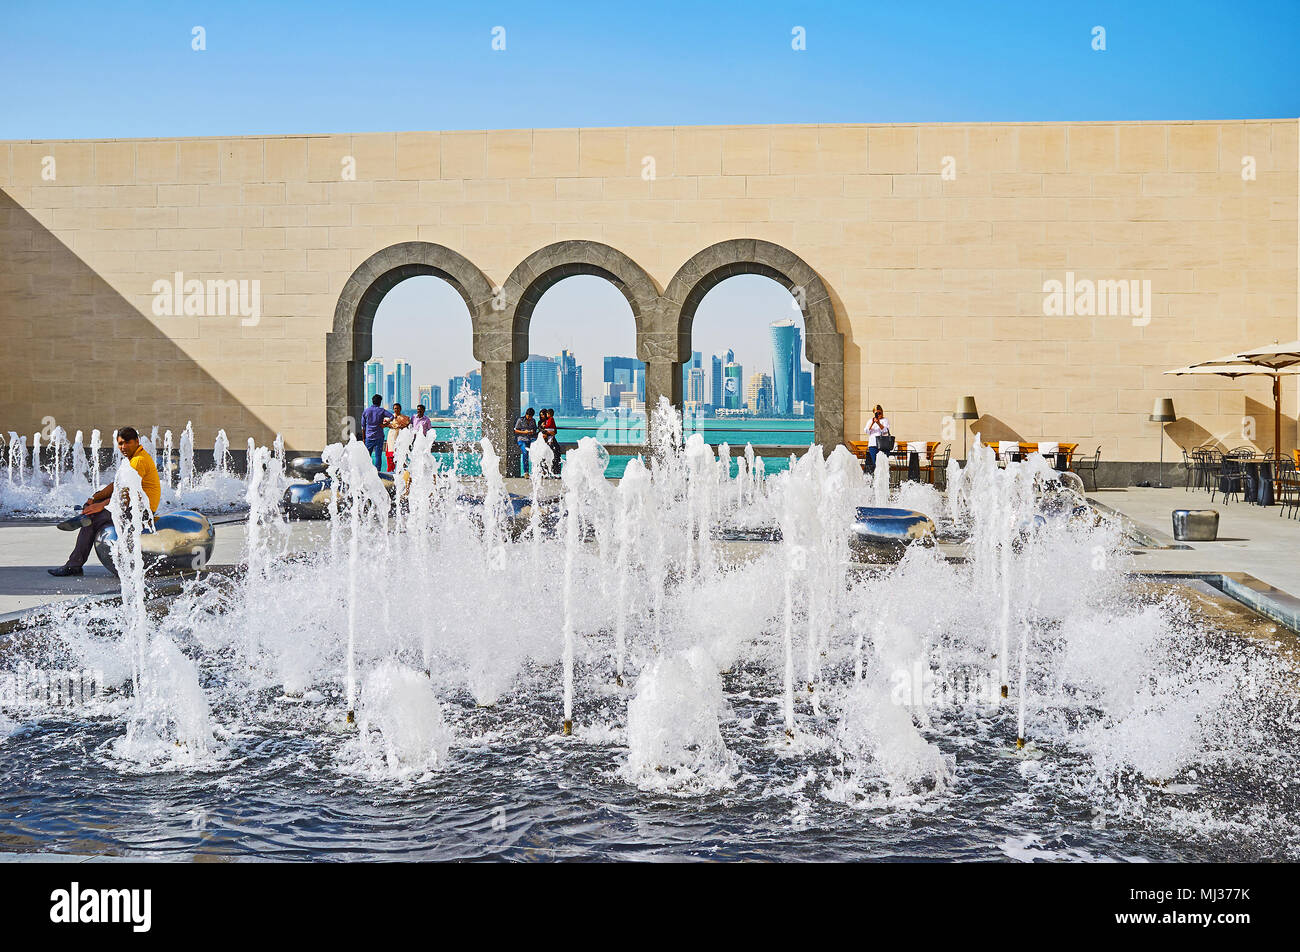 DOHA, Katar - 13. FEBRUAR 2018: Die malerischen Innenhof des Museum für Islamische Kunst mit Brunnen, futuristischen Bänke und Bogenfenstern verziert ist, Eröffnung Stockfoto